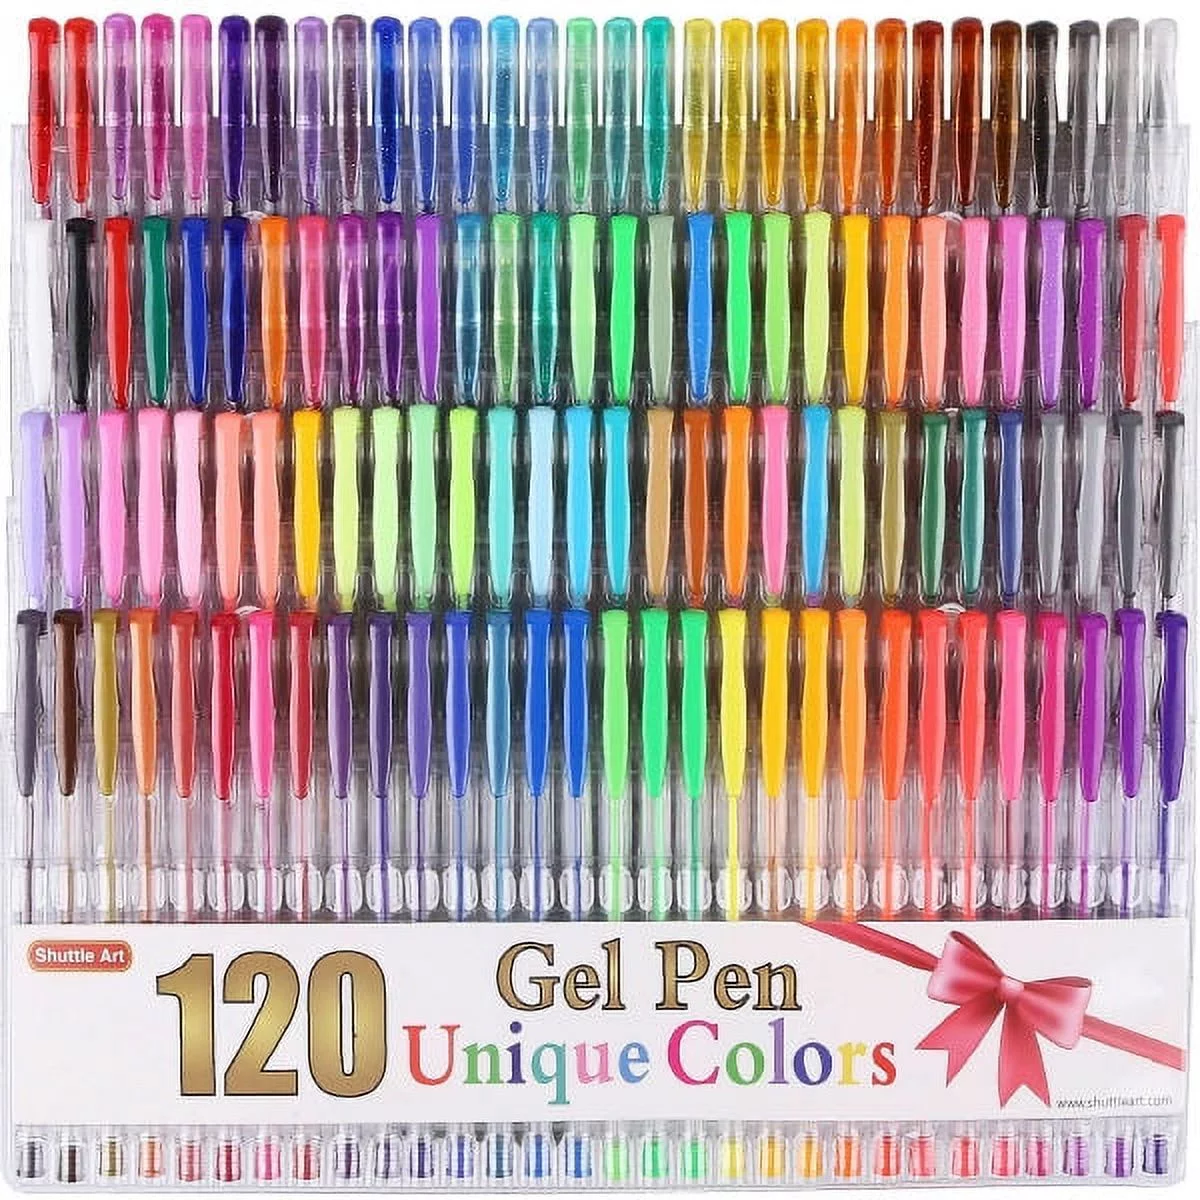 Shuttle Art 120 Unique Colors (No Duplicates) Gel Pens Colored Gel Pen Set for Adult Coloring Books Art Markers